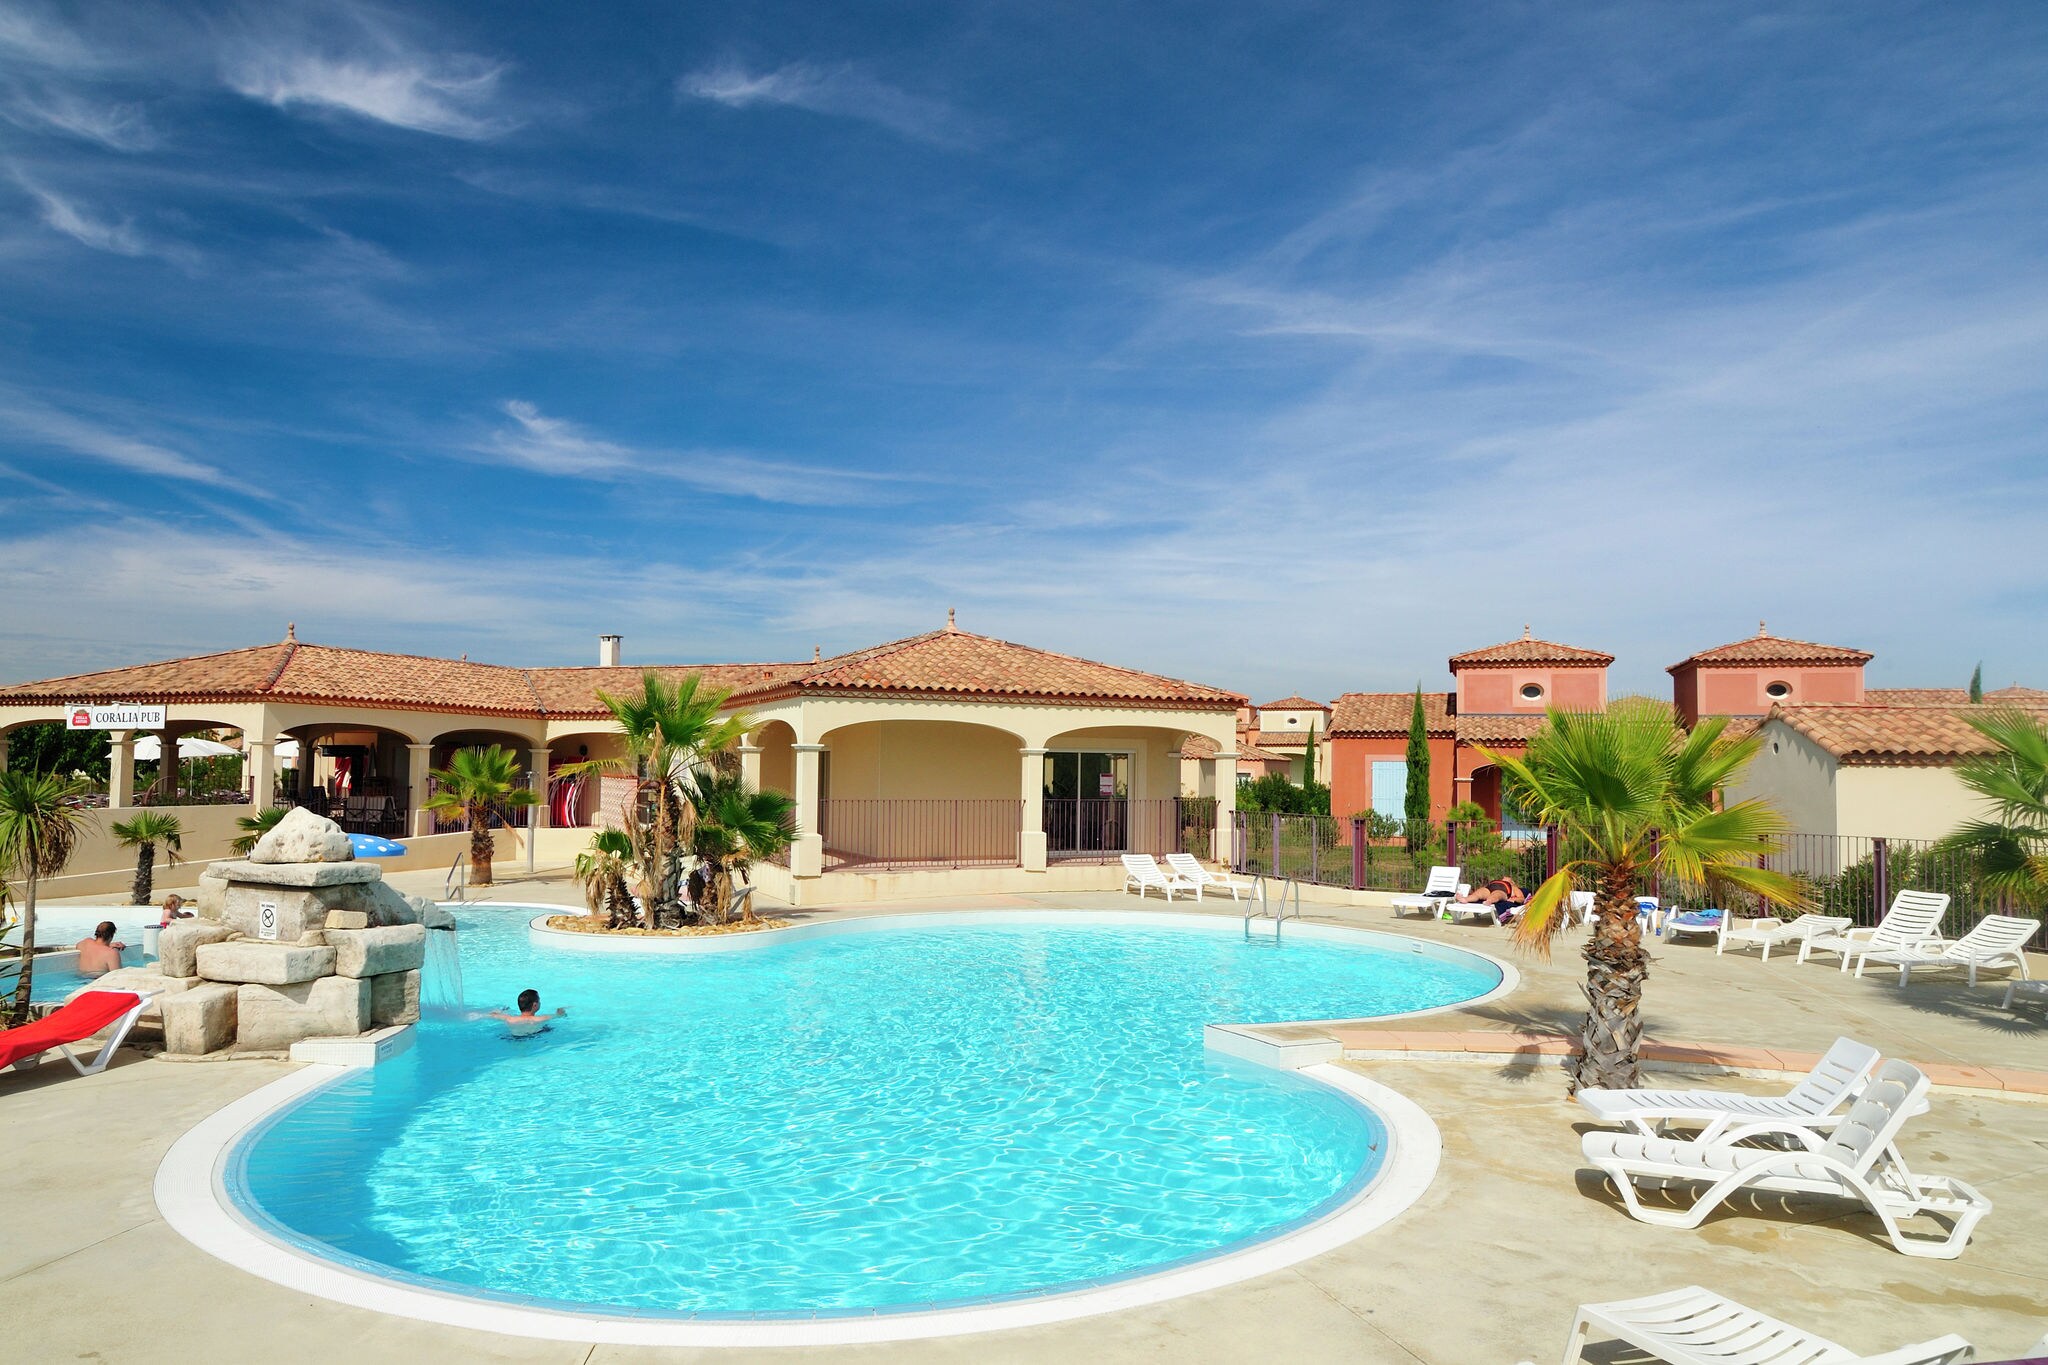 Villa d'été avec terrasse ou loggia, située en Languedoc